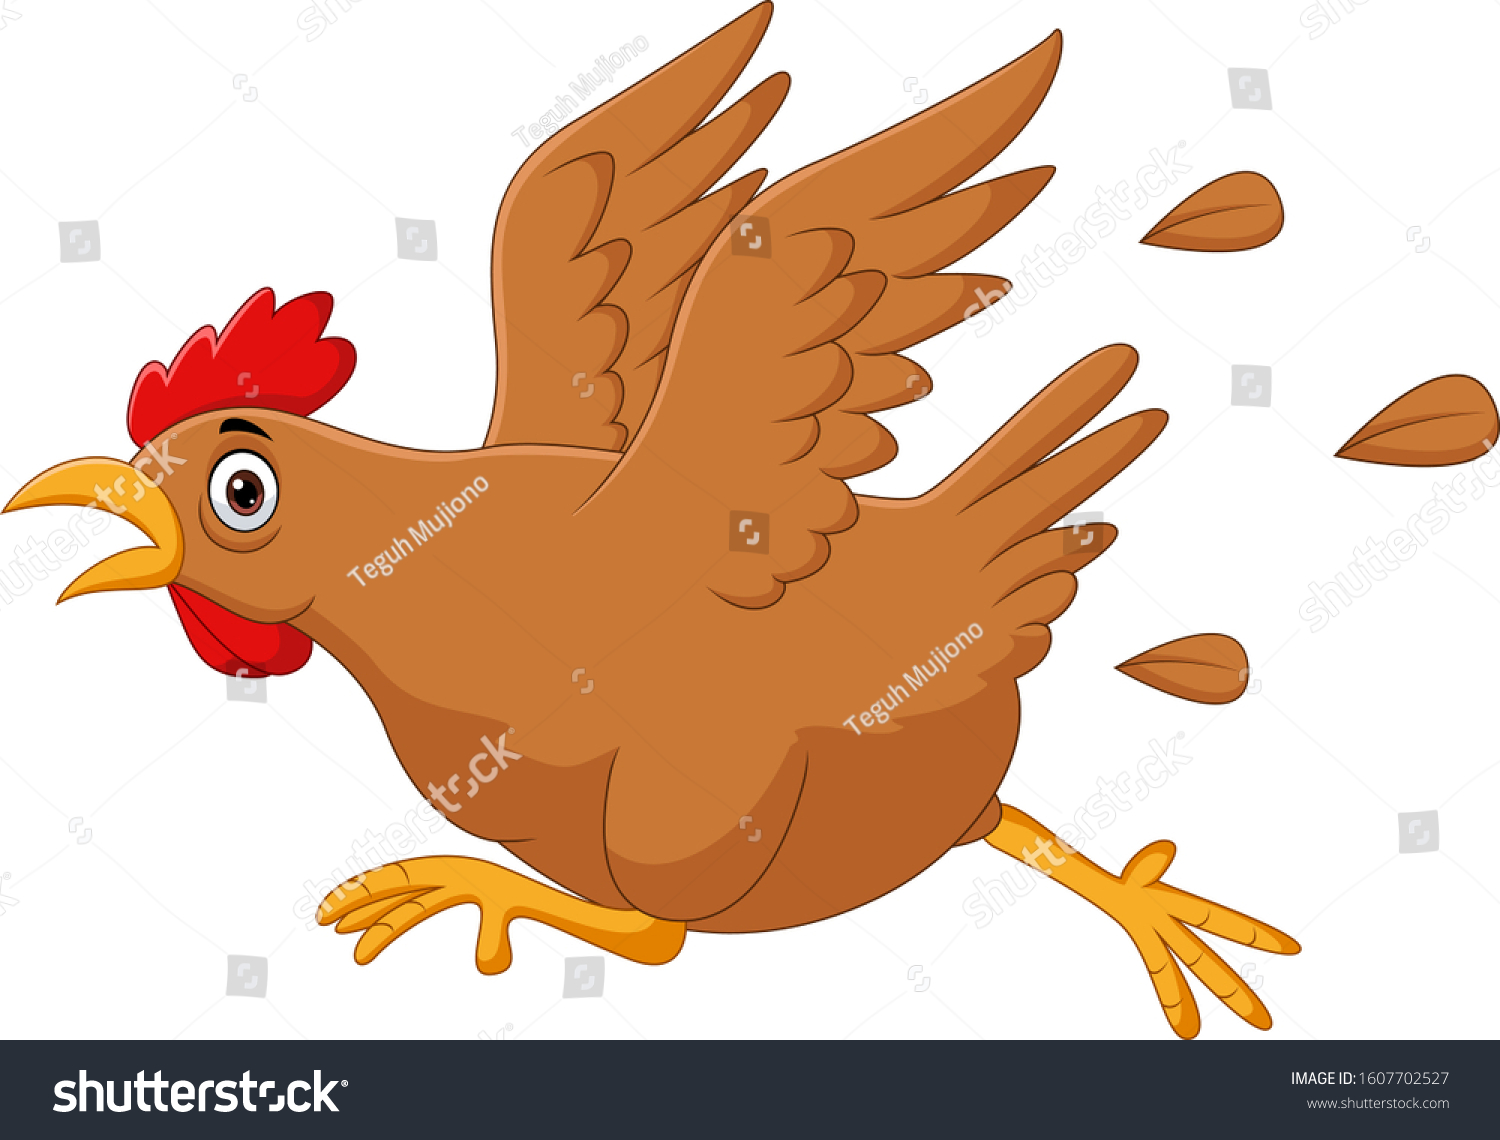 Hens running Images, Stock Photos & Vectors | Shutterstock